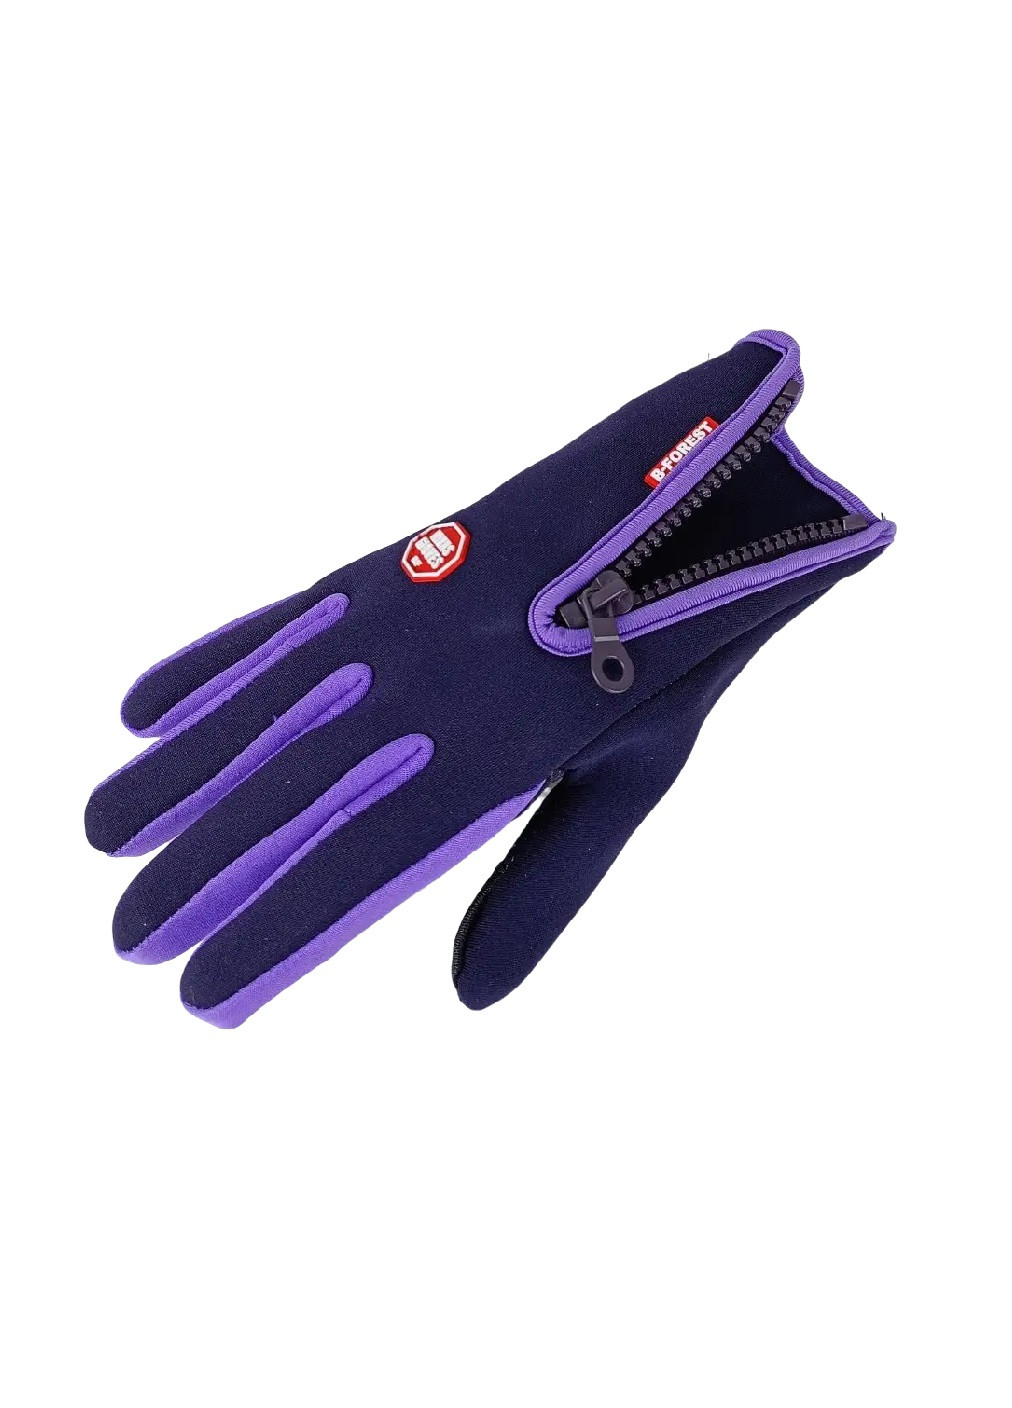 Велоперчатки велосипедные перчатки с водоотталкивающим сенсорным покрытием спандекс флис (476031-Prob) Фиолетовые S Unbranded (275863532)